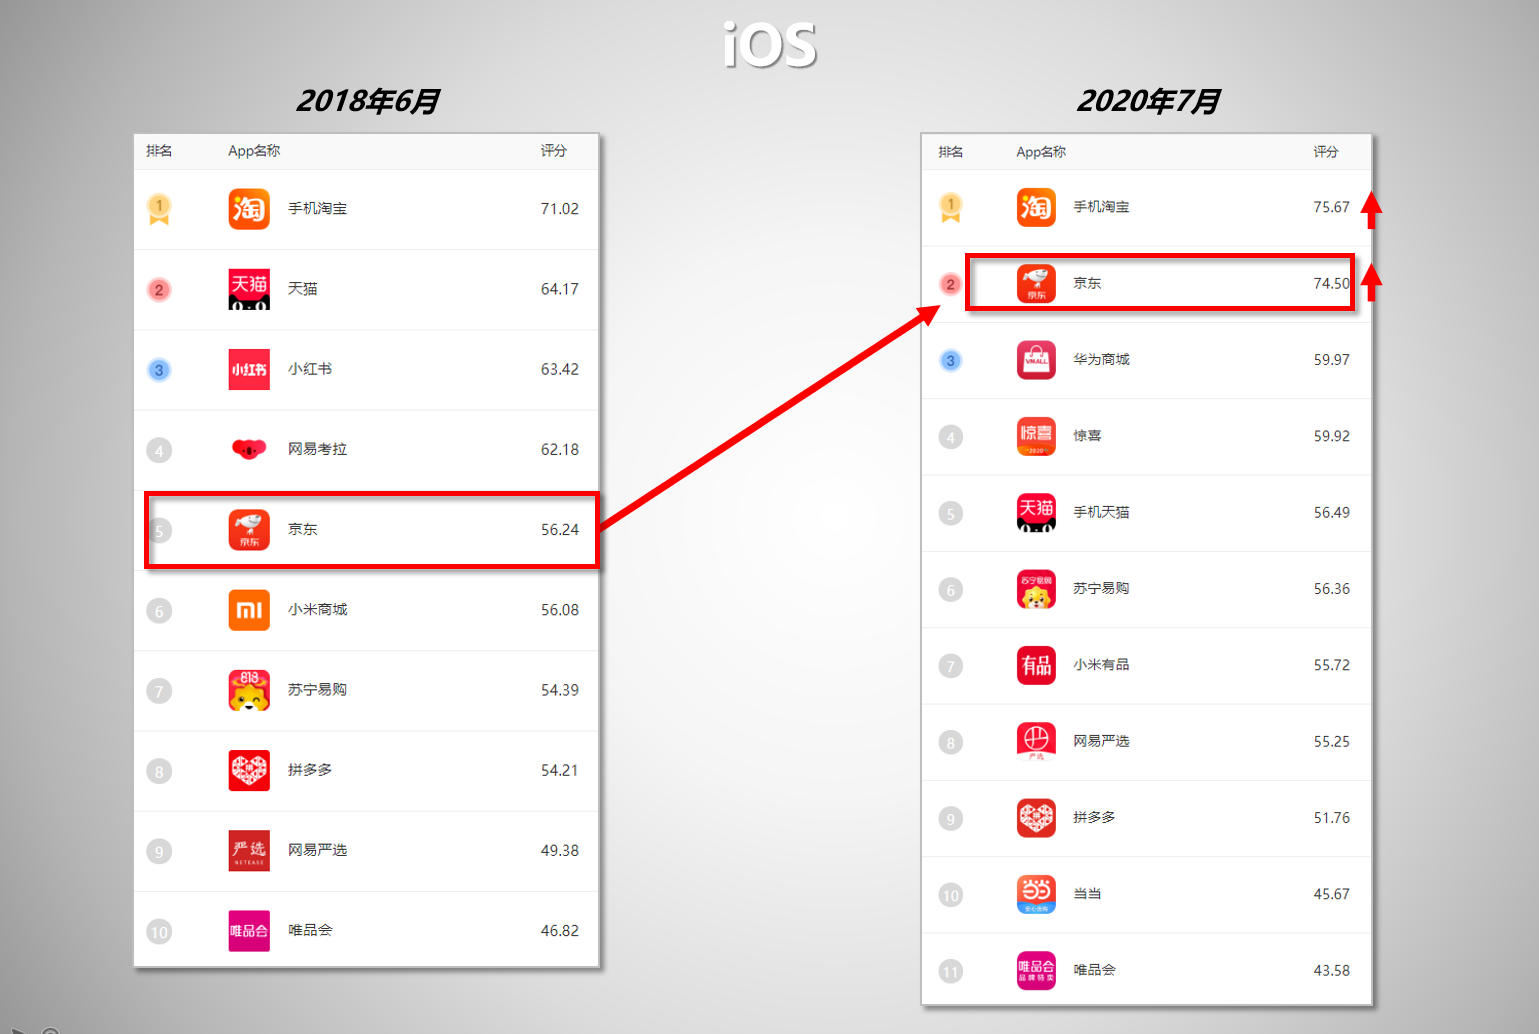 图：2018年、2020年可及购物类评测iOS端对比  注释：2018年可及评测只限iOS端